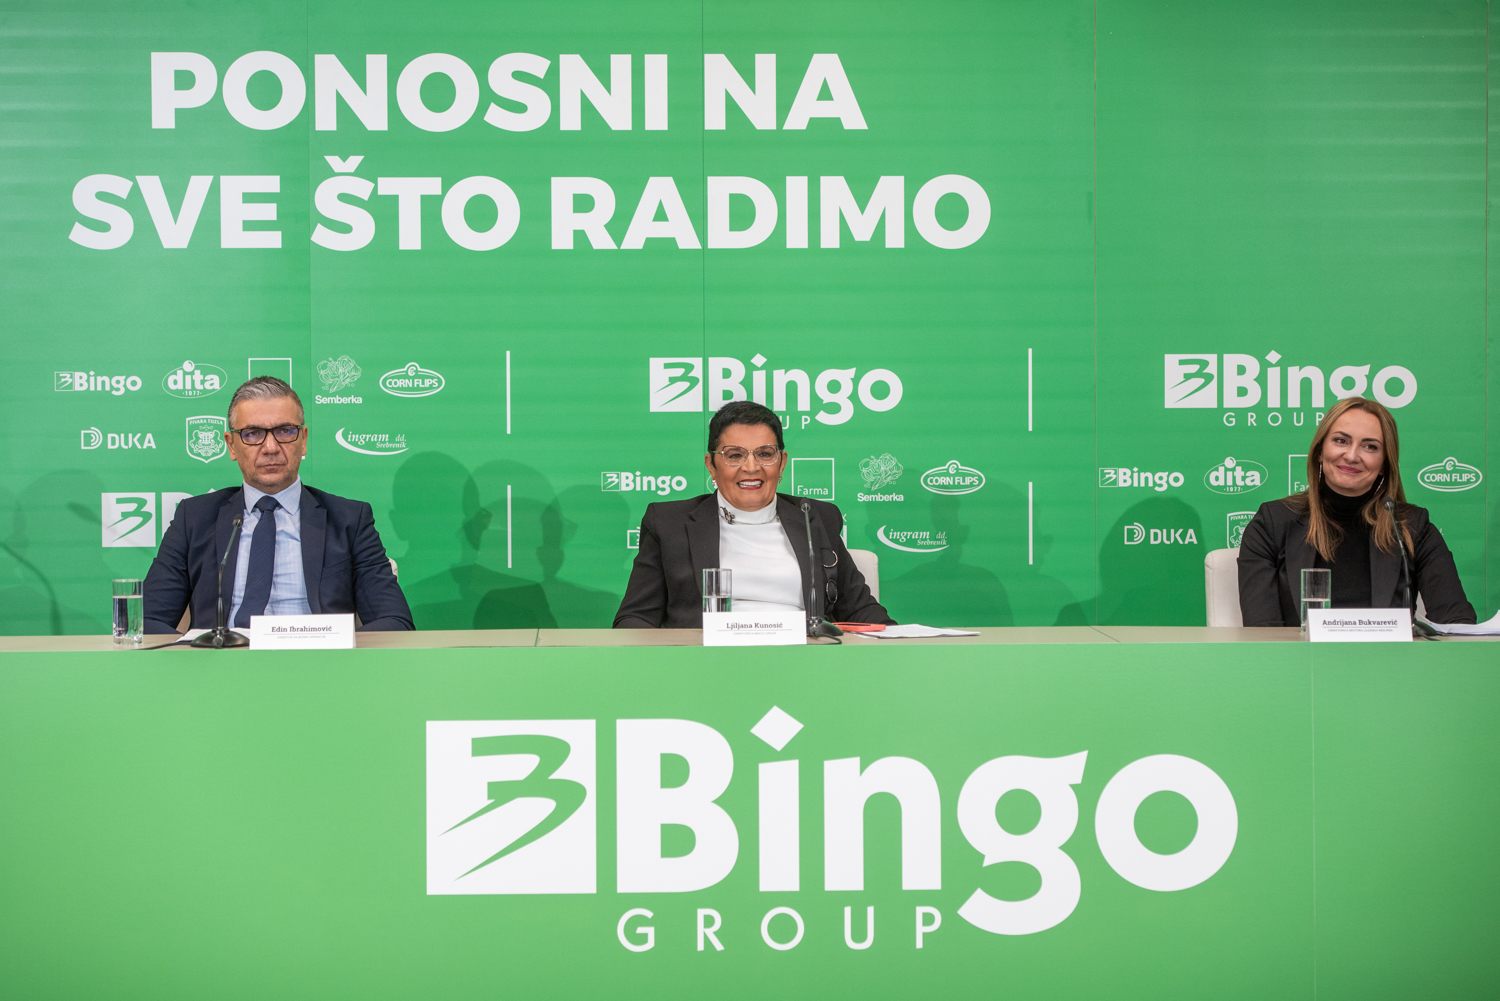 bingo group 